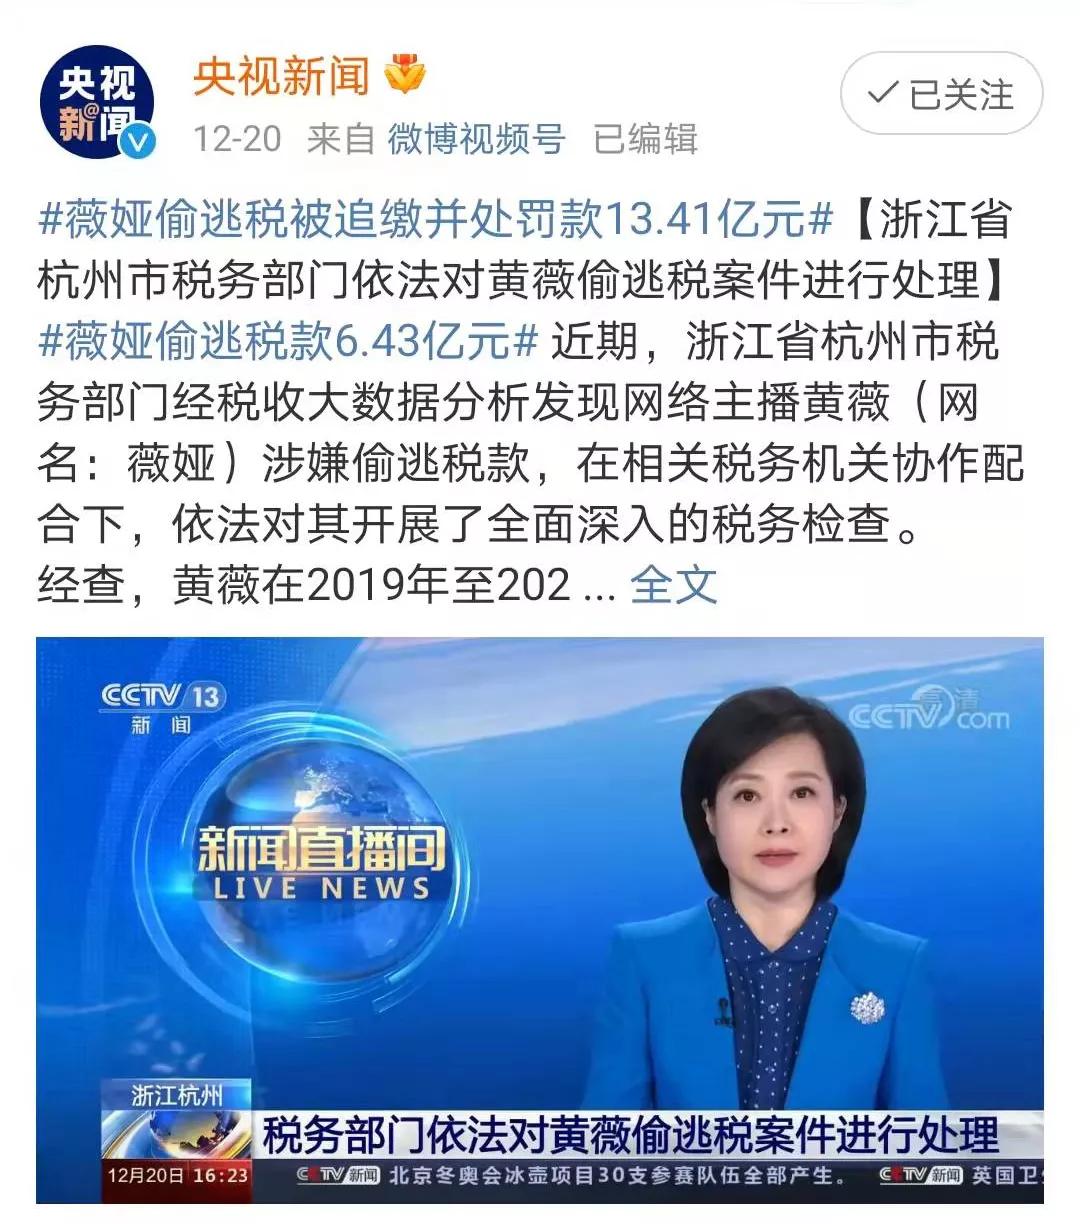 优享资讯 | 中国顶流网红主播薇娅偷税被罚超13亿 官方披露细节[图]